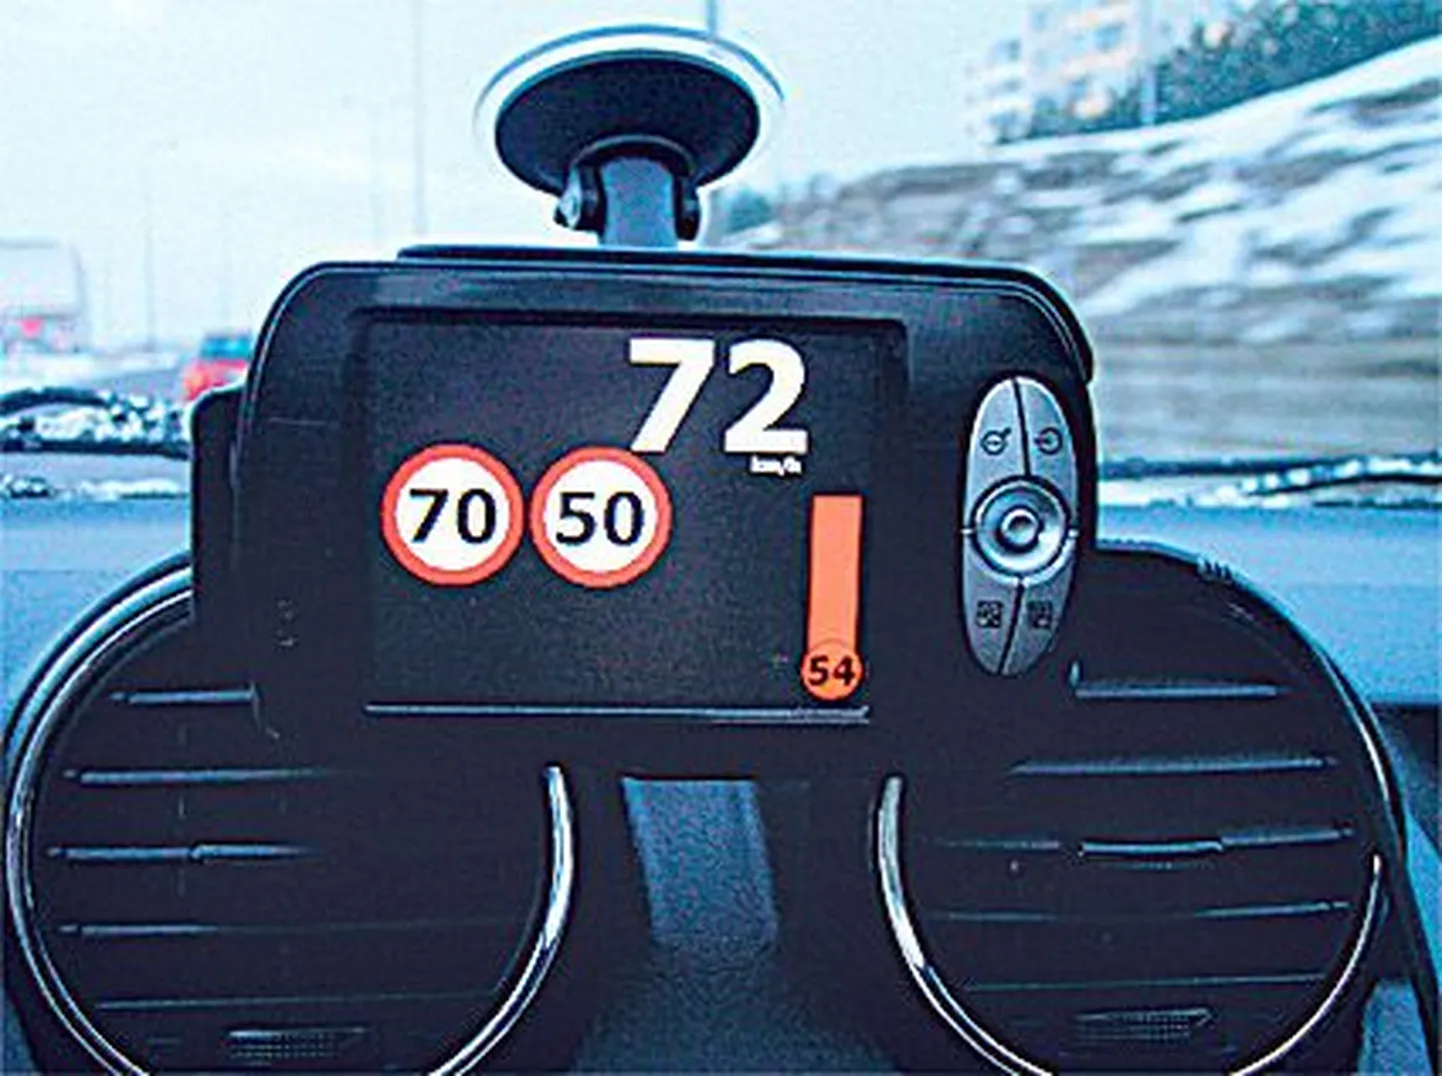 На экран устройства eLP выводится информация об ограничении скорости на этом участке дороги.